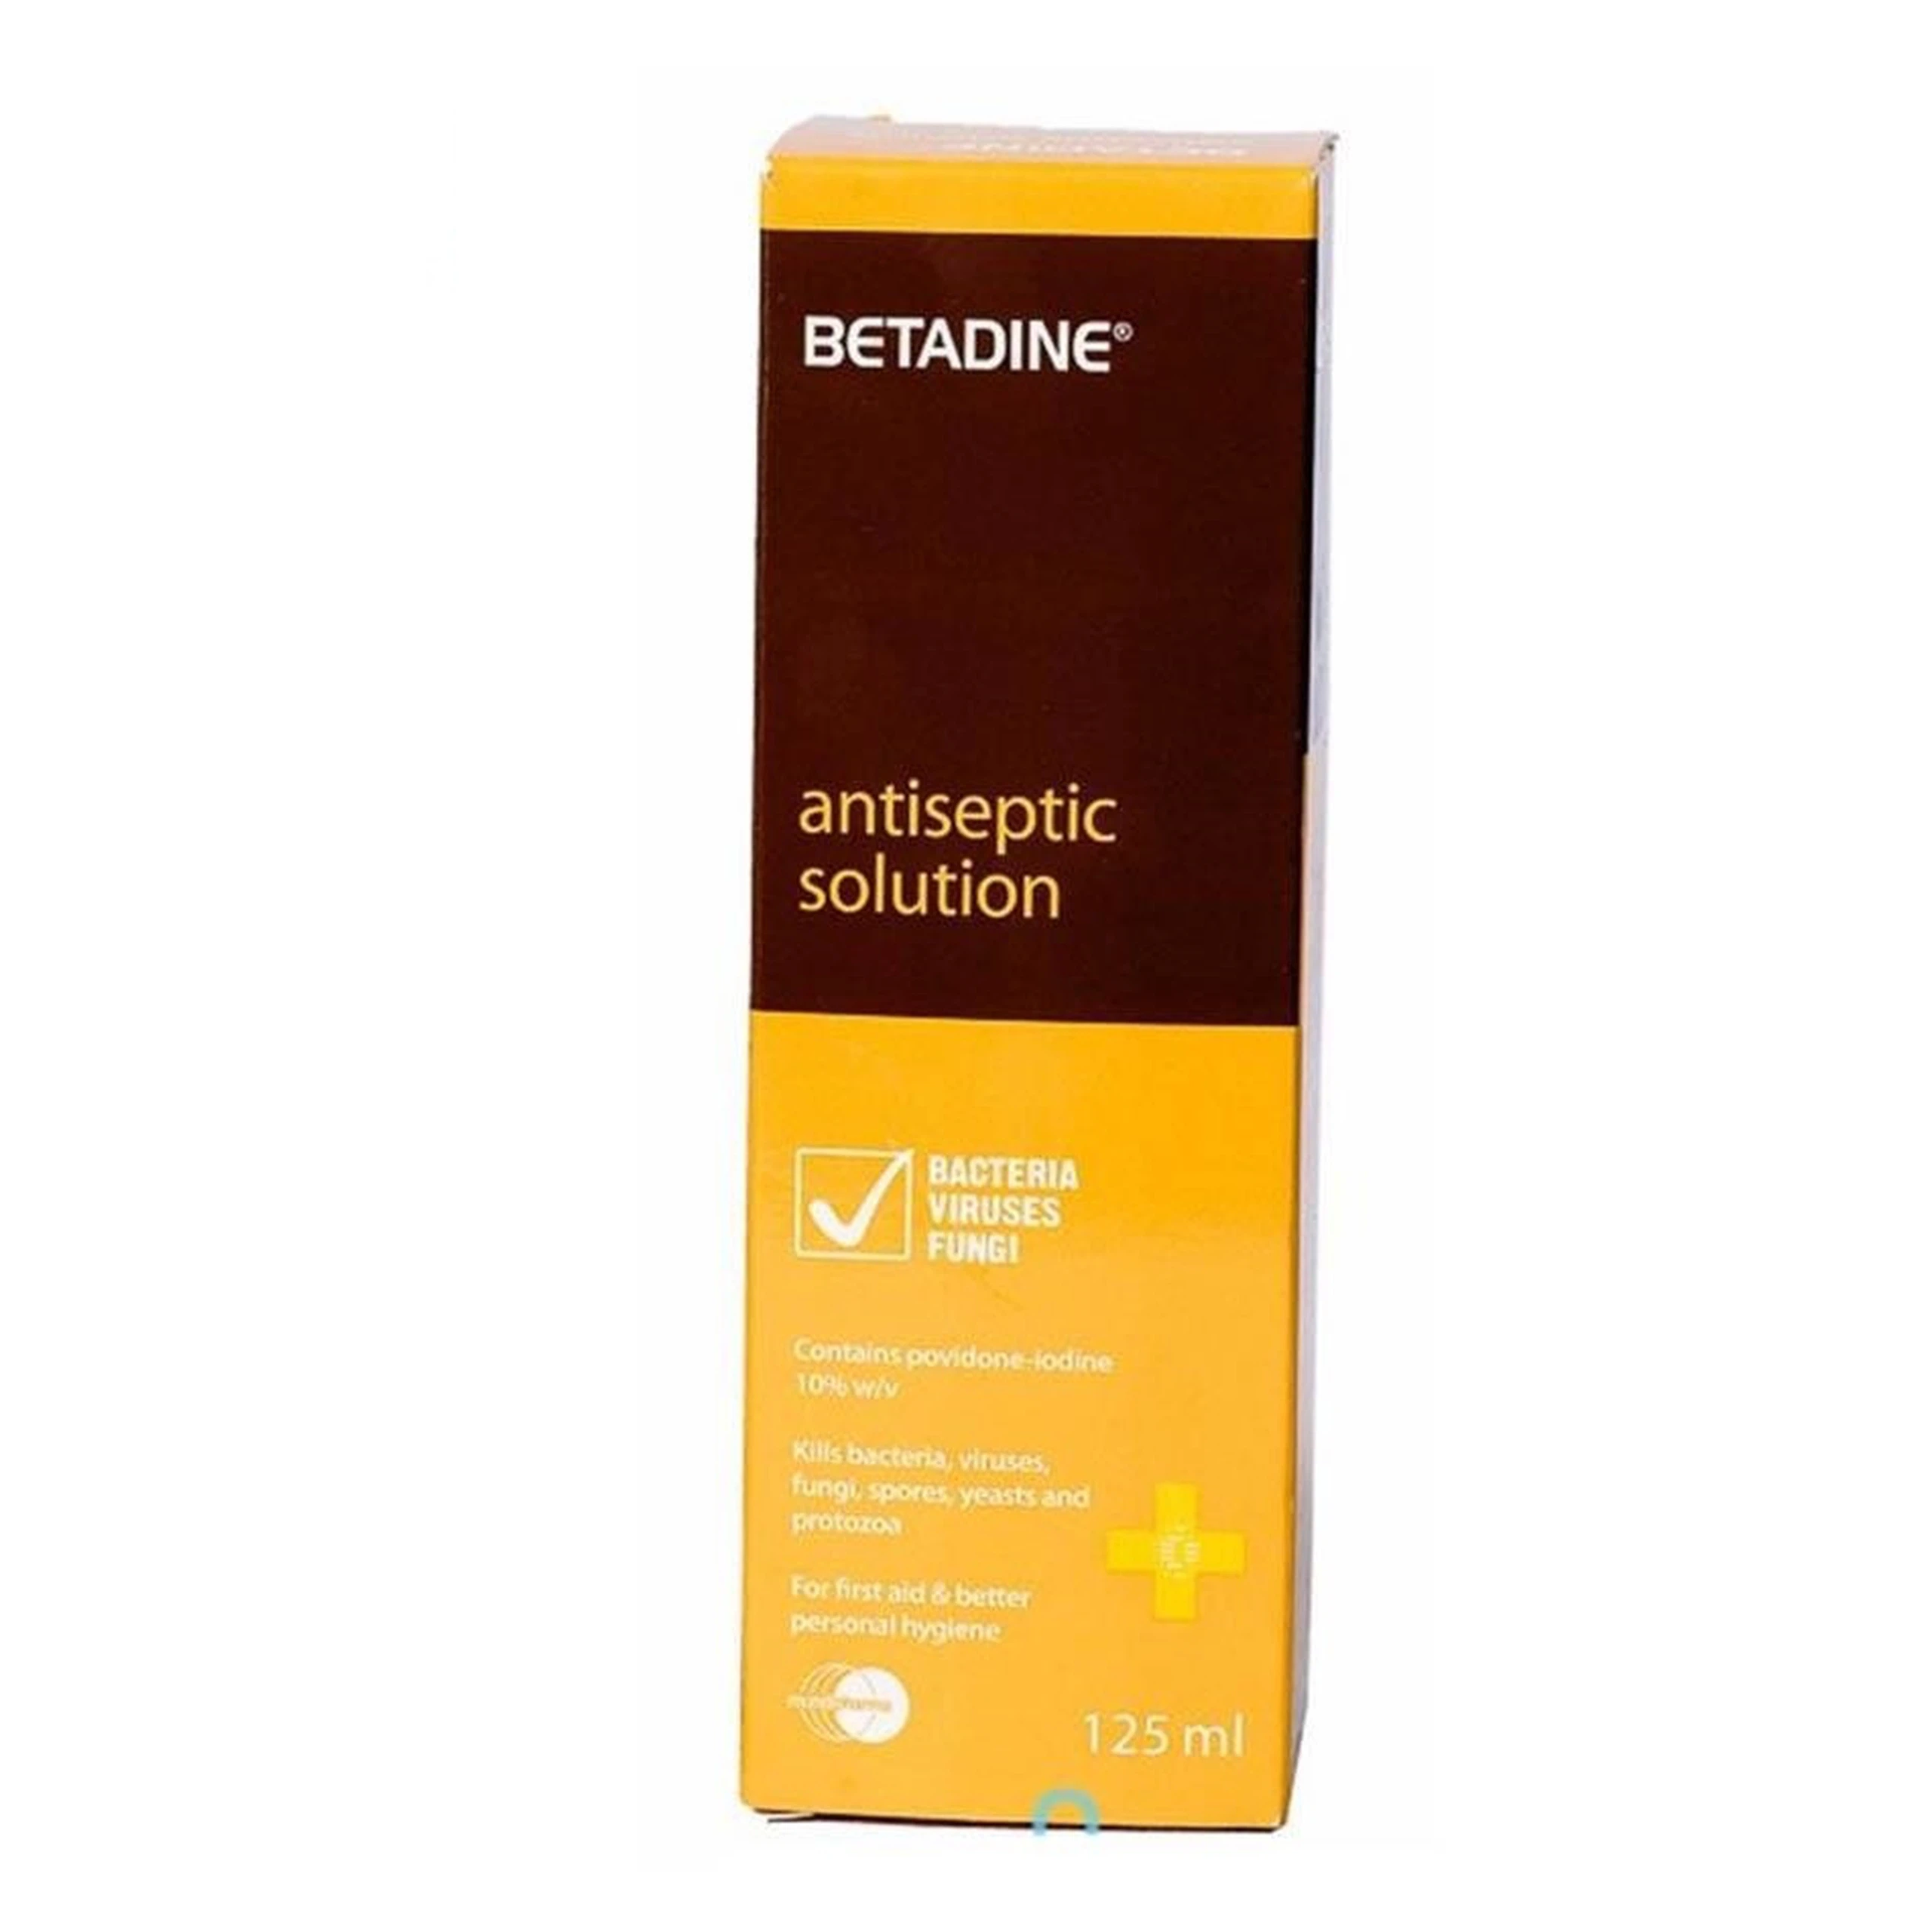 Dung dịch sát khuẩn Betadine Antiseptic Solution hỗ trợ sát khuẩn vết thương (125ml) 